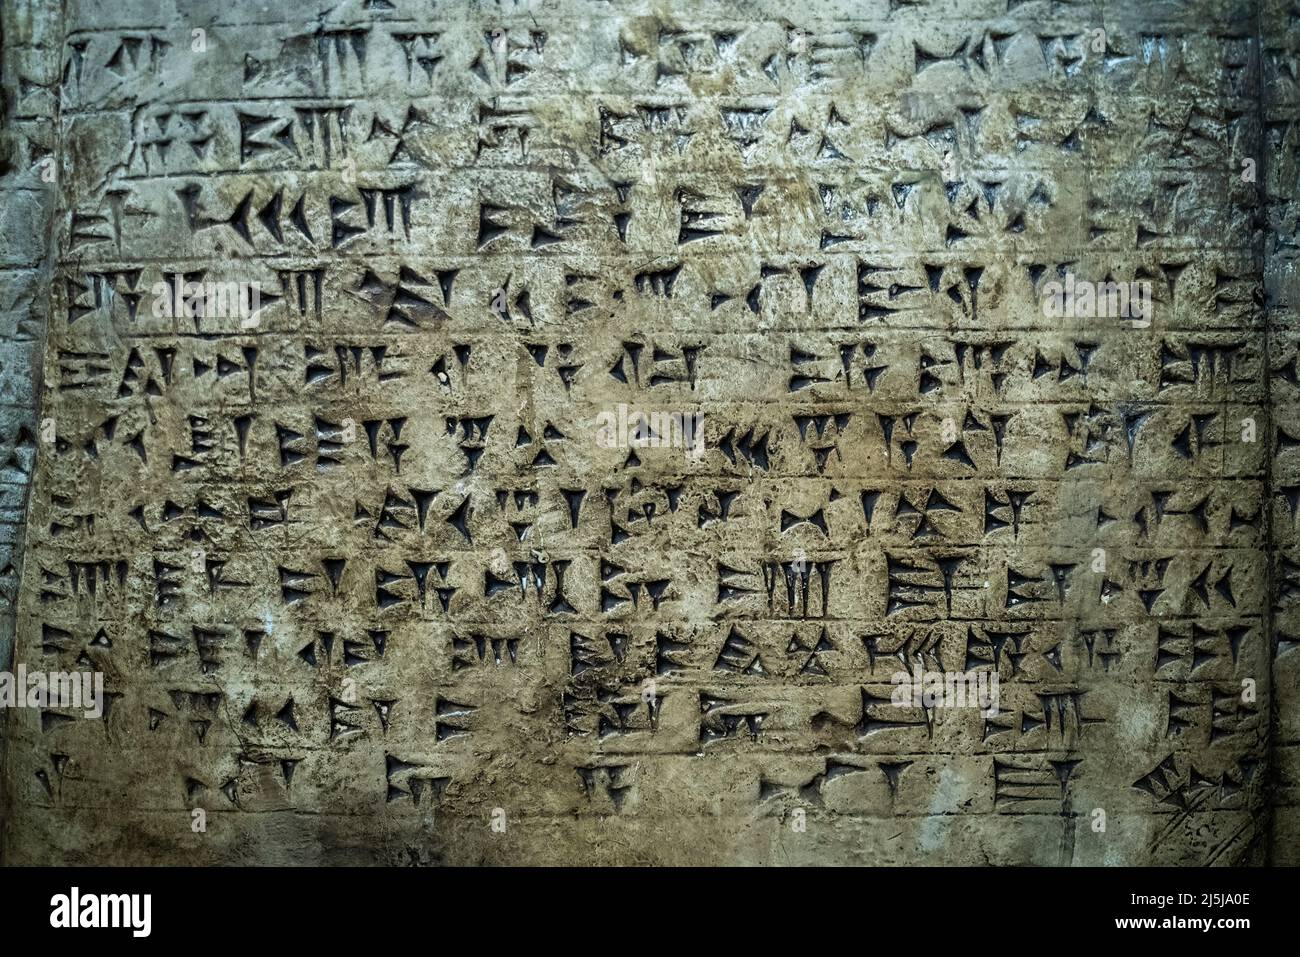 Antica scritta cuneiforme sulla parete. Foto di alta qualità Foto Stock